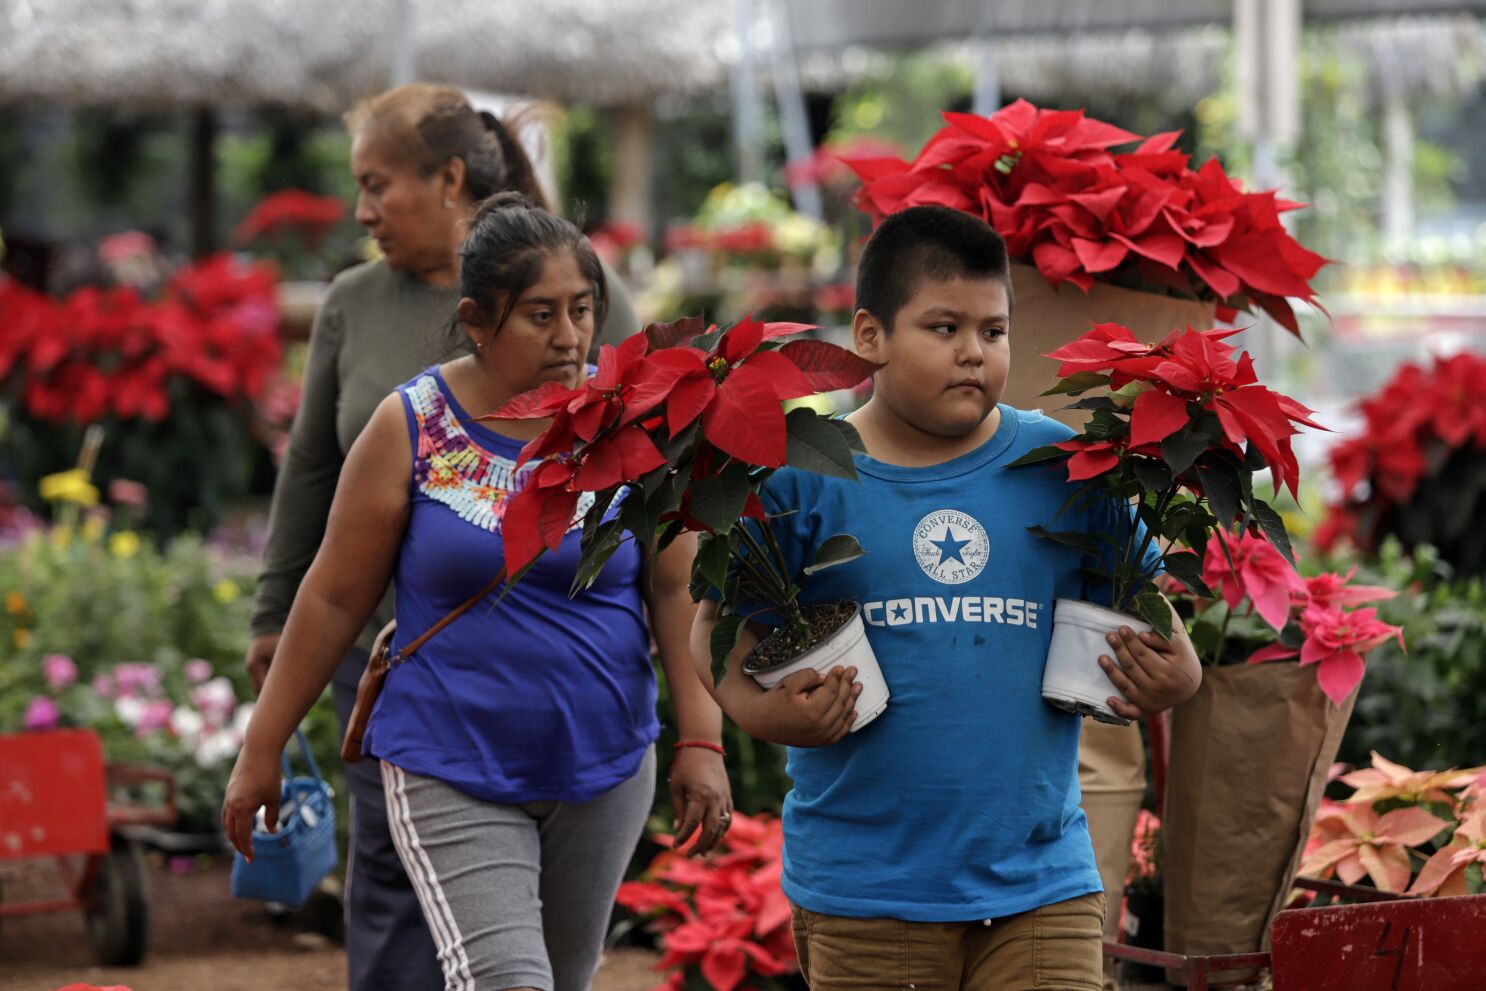 La cosecha de la flor de Nochebuena inicia en México con nuevas variedades  - San Diego Union-Tribune en Español